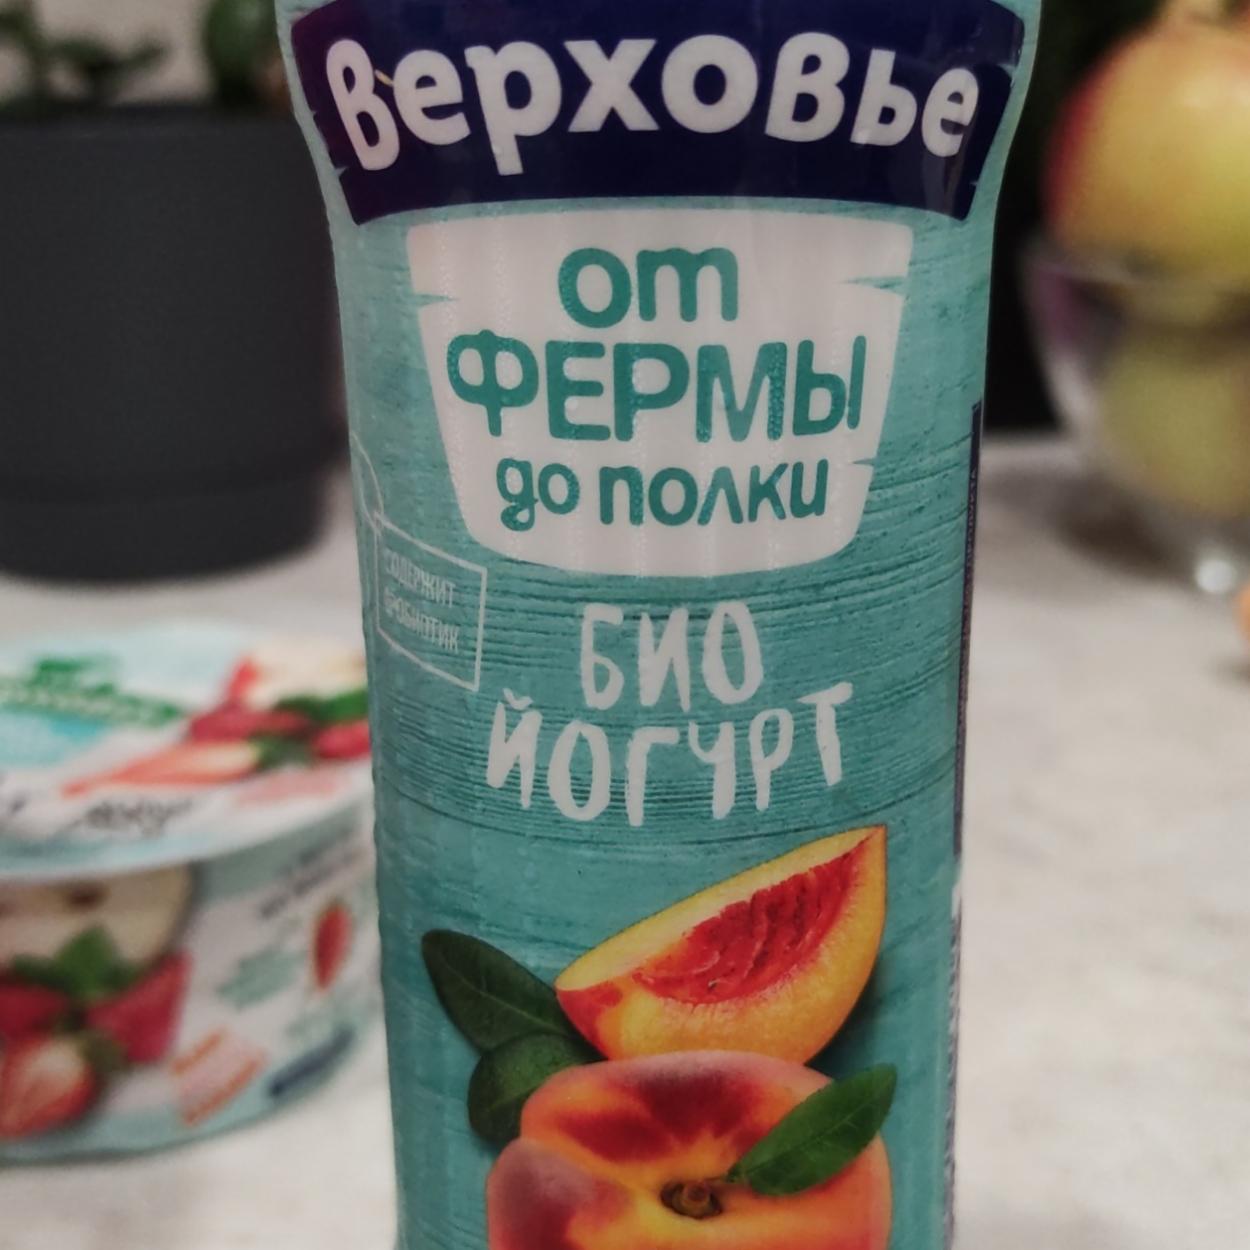 Фото - био йогурт персик Верховье